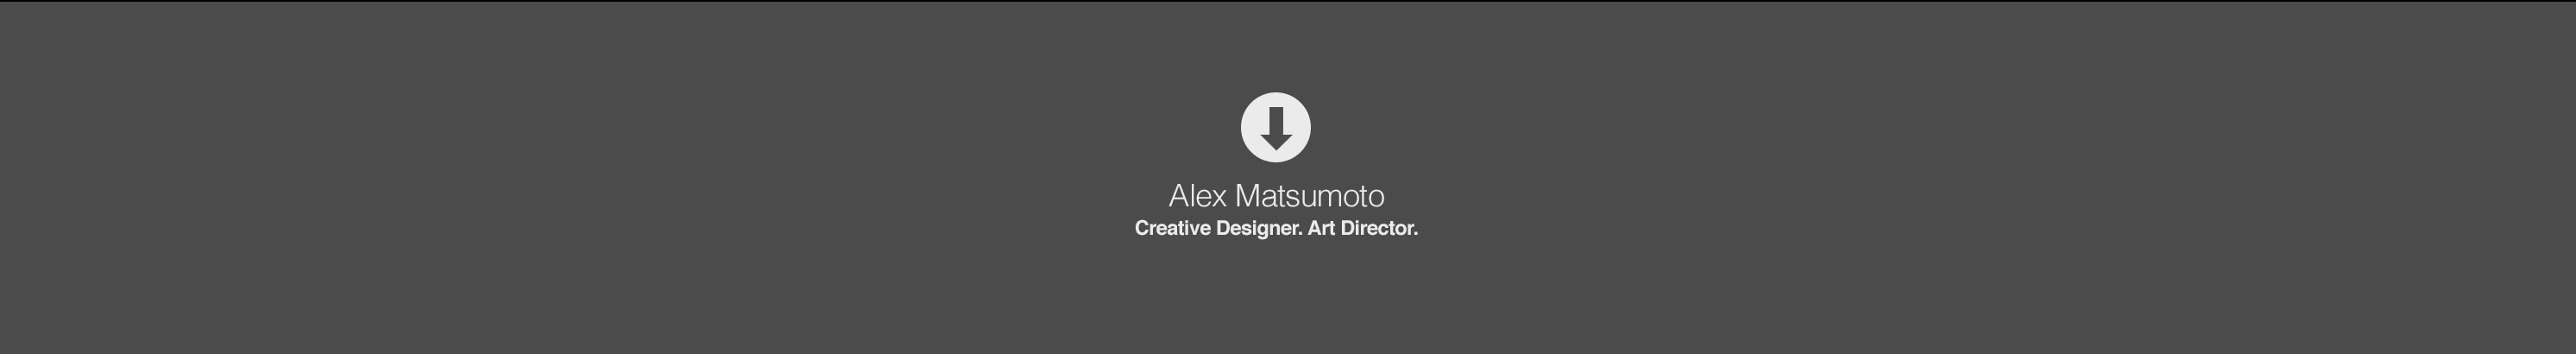 Alex Matsumoto's profile banner